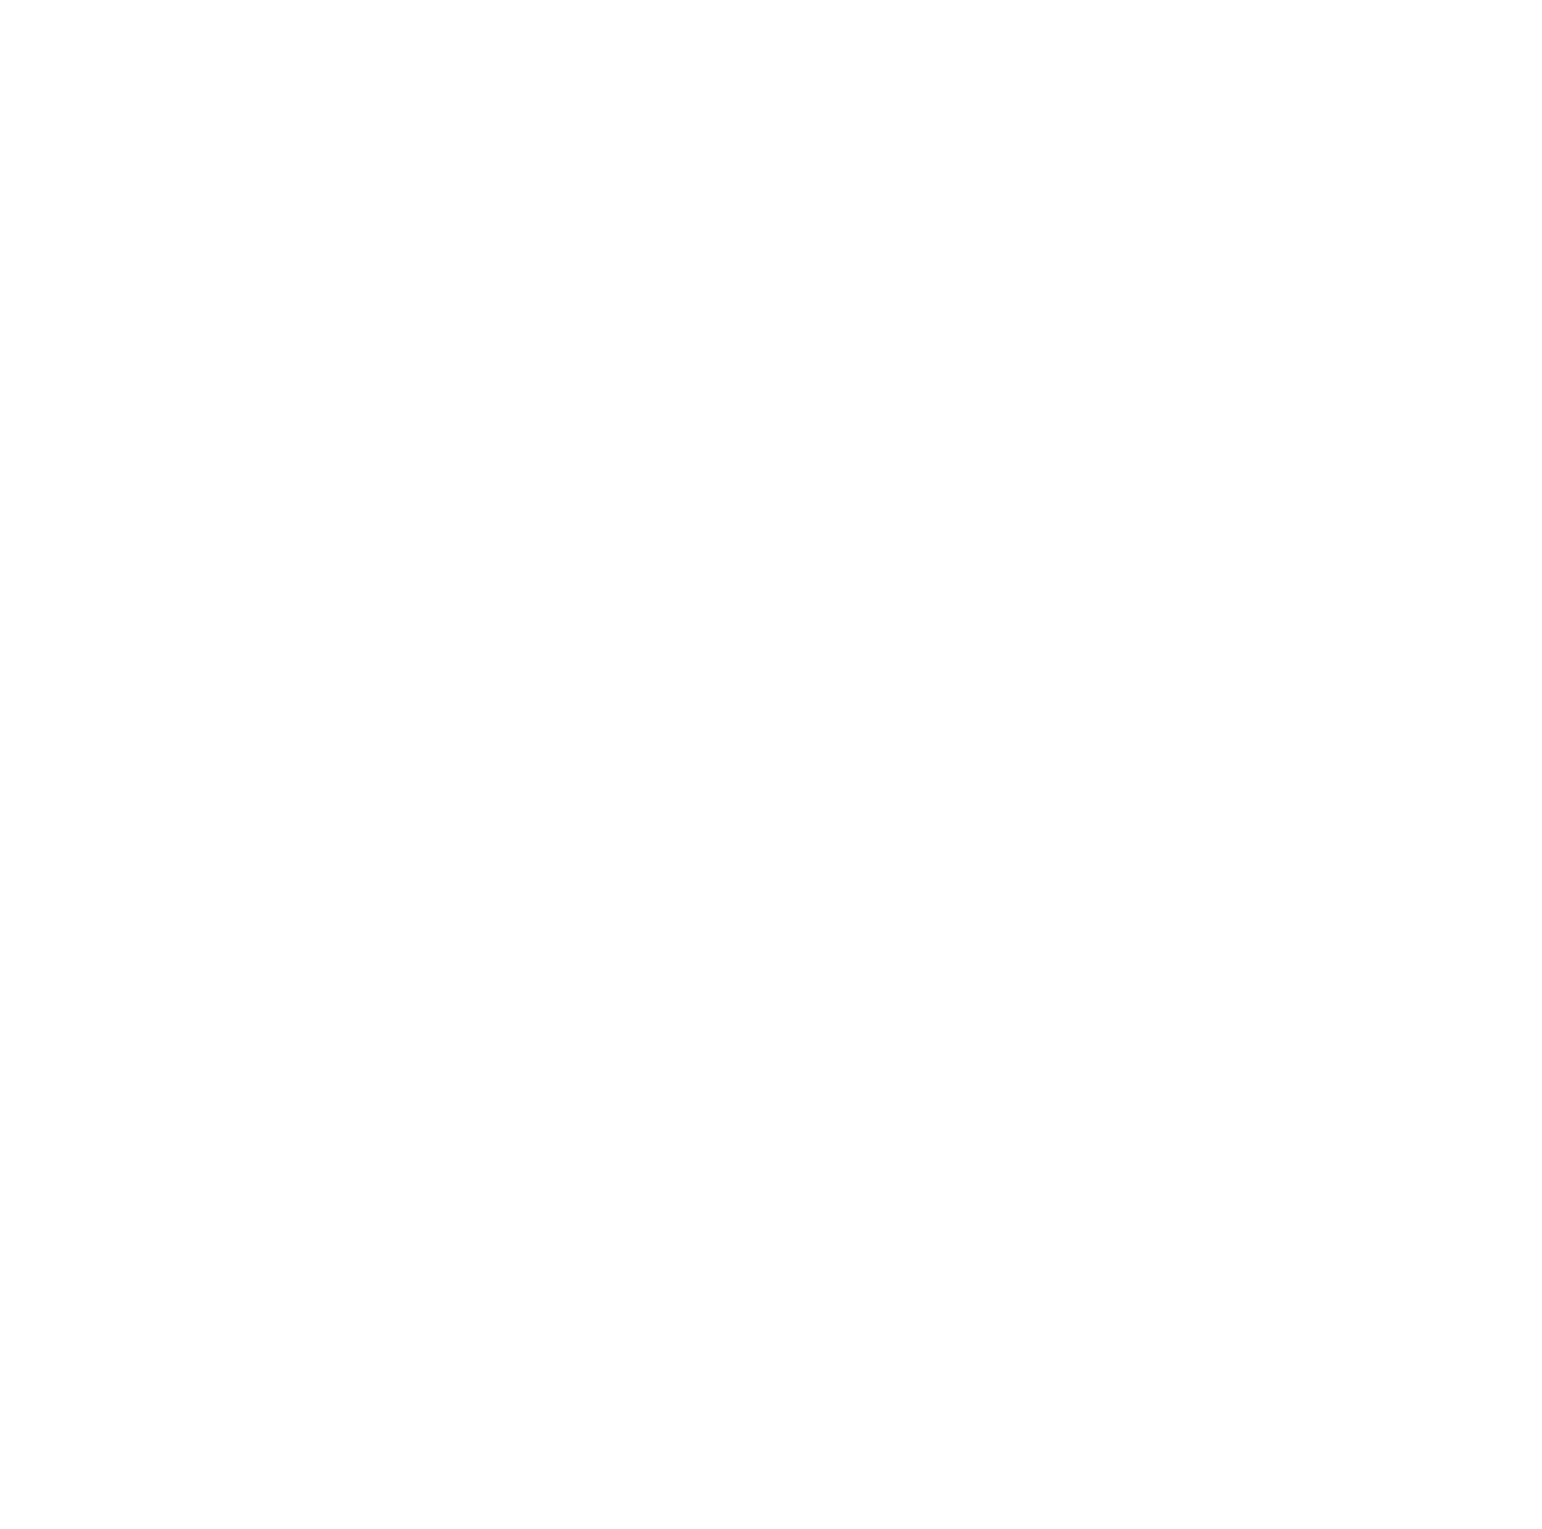 Manitex International logo for dark backgrounds (transparent PNG)